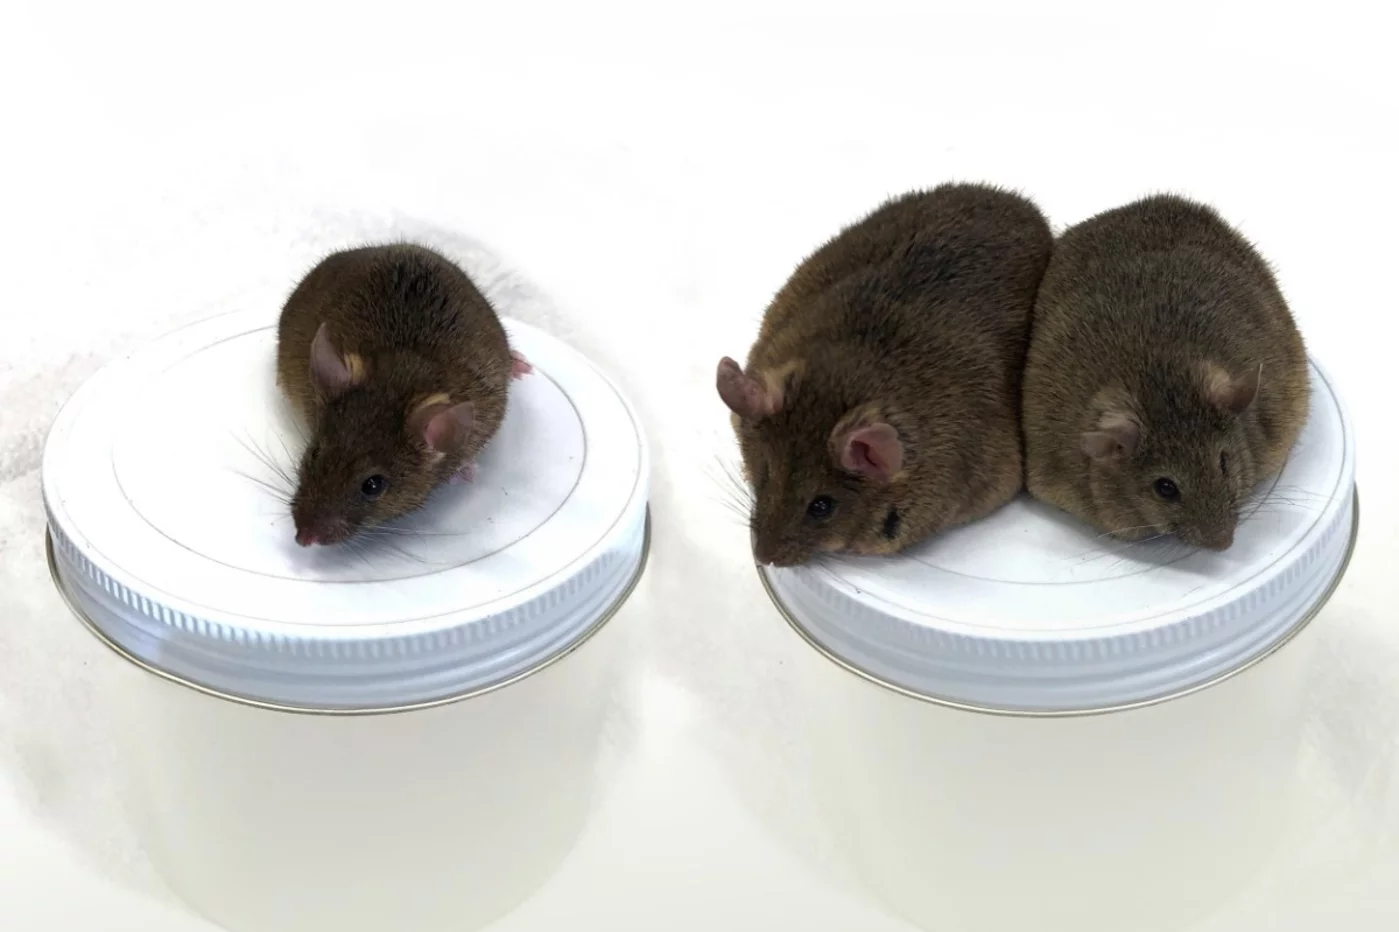 El ratón de la izquierda sirve de control, mientras que los dos de la derecha son individuos de diferentes generaciones, que evidencian la transmisión del fenotipo (obesidad).